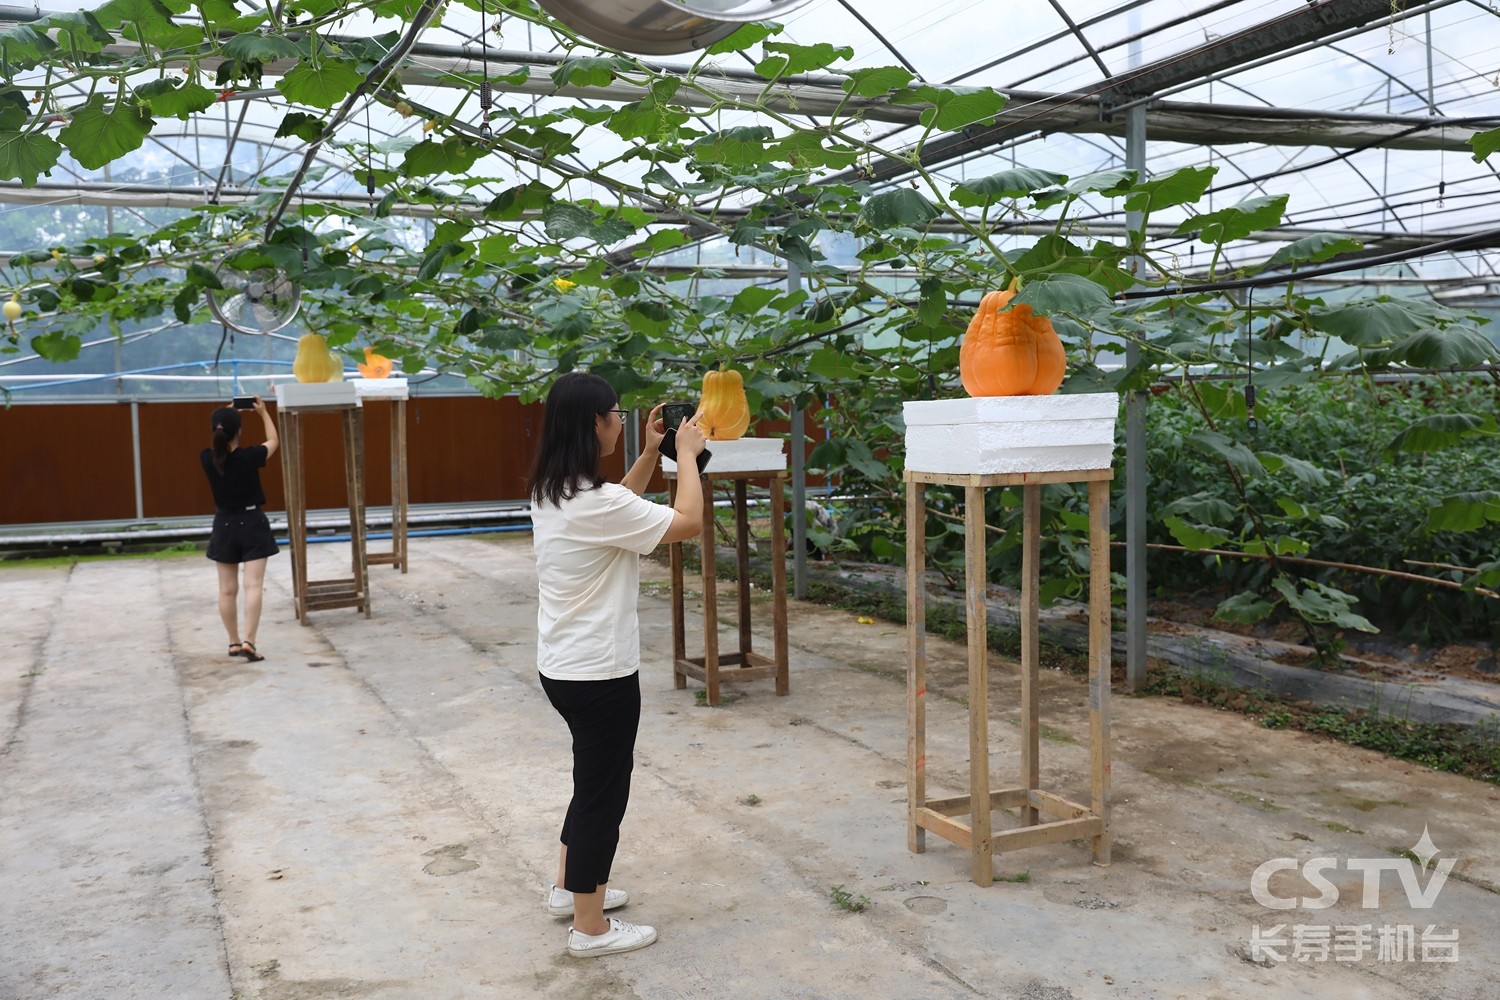 300斤重的南瓜、1.5米长的丝瓜……长寿这个蔬菜基地很神奇